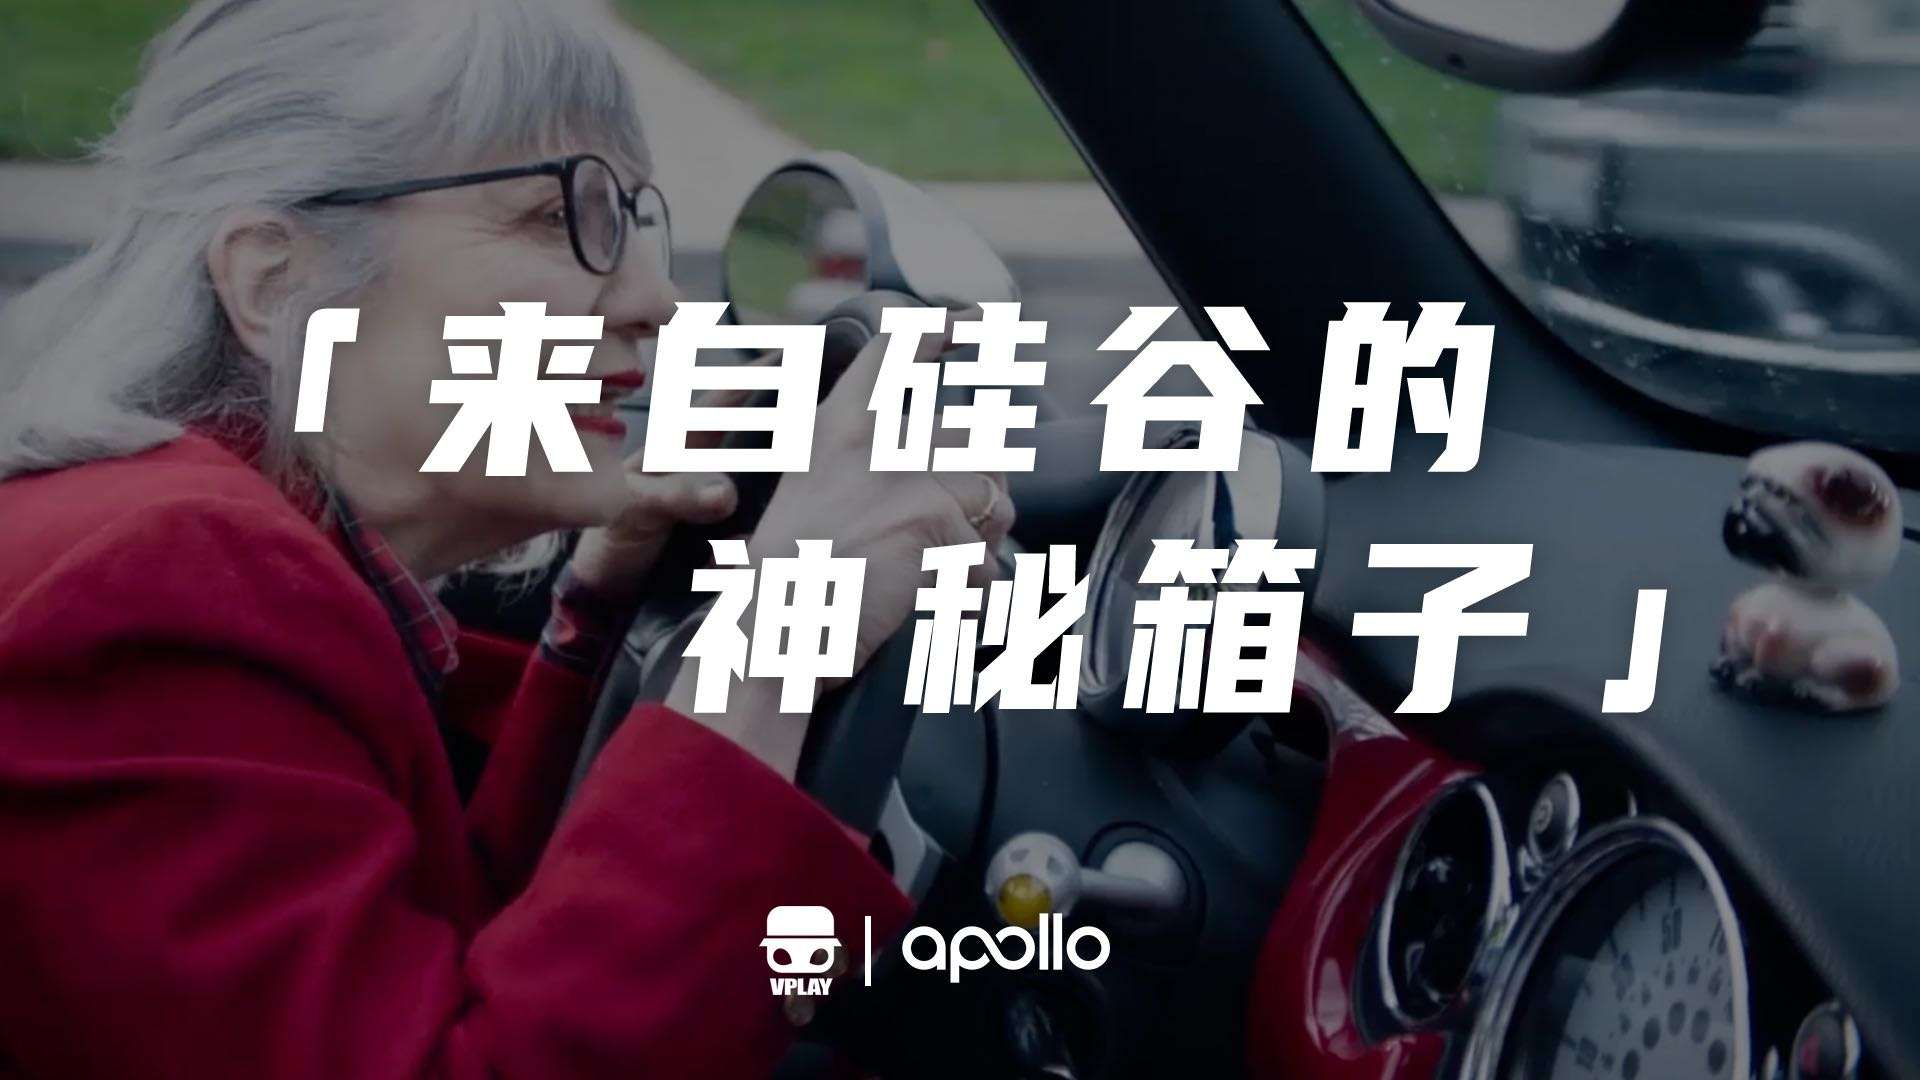 百度Apollo自动驾驶货车产品片《来自硅谷的神秘箱子》